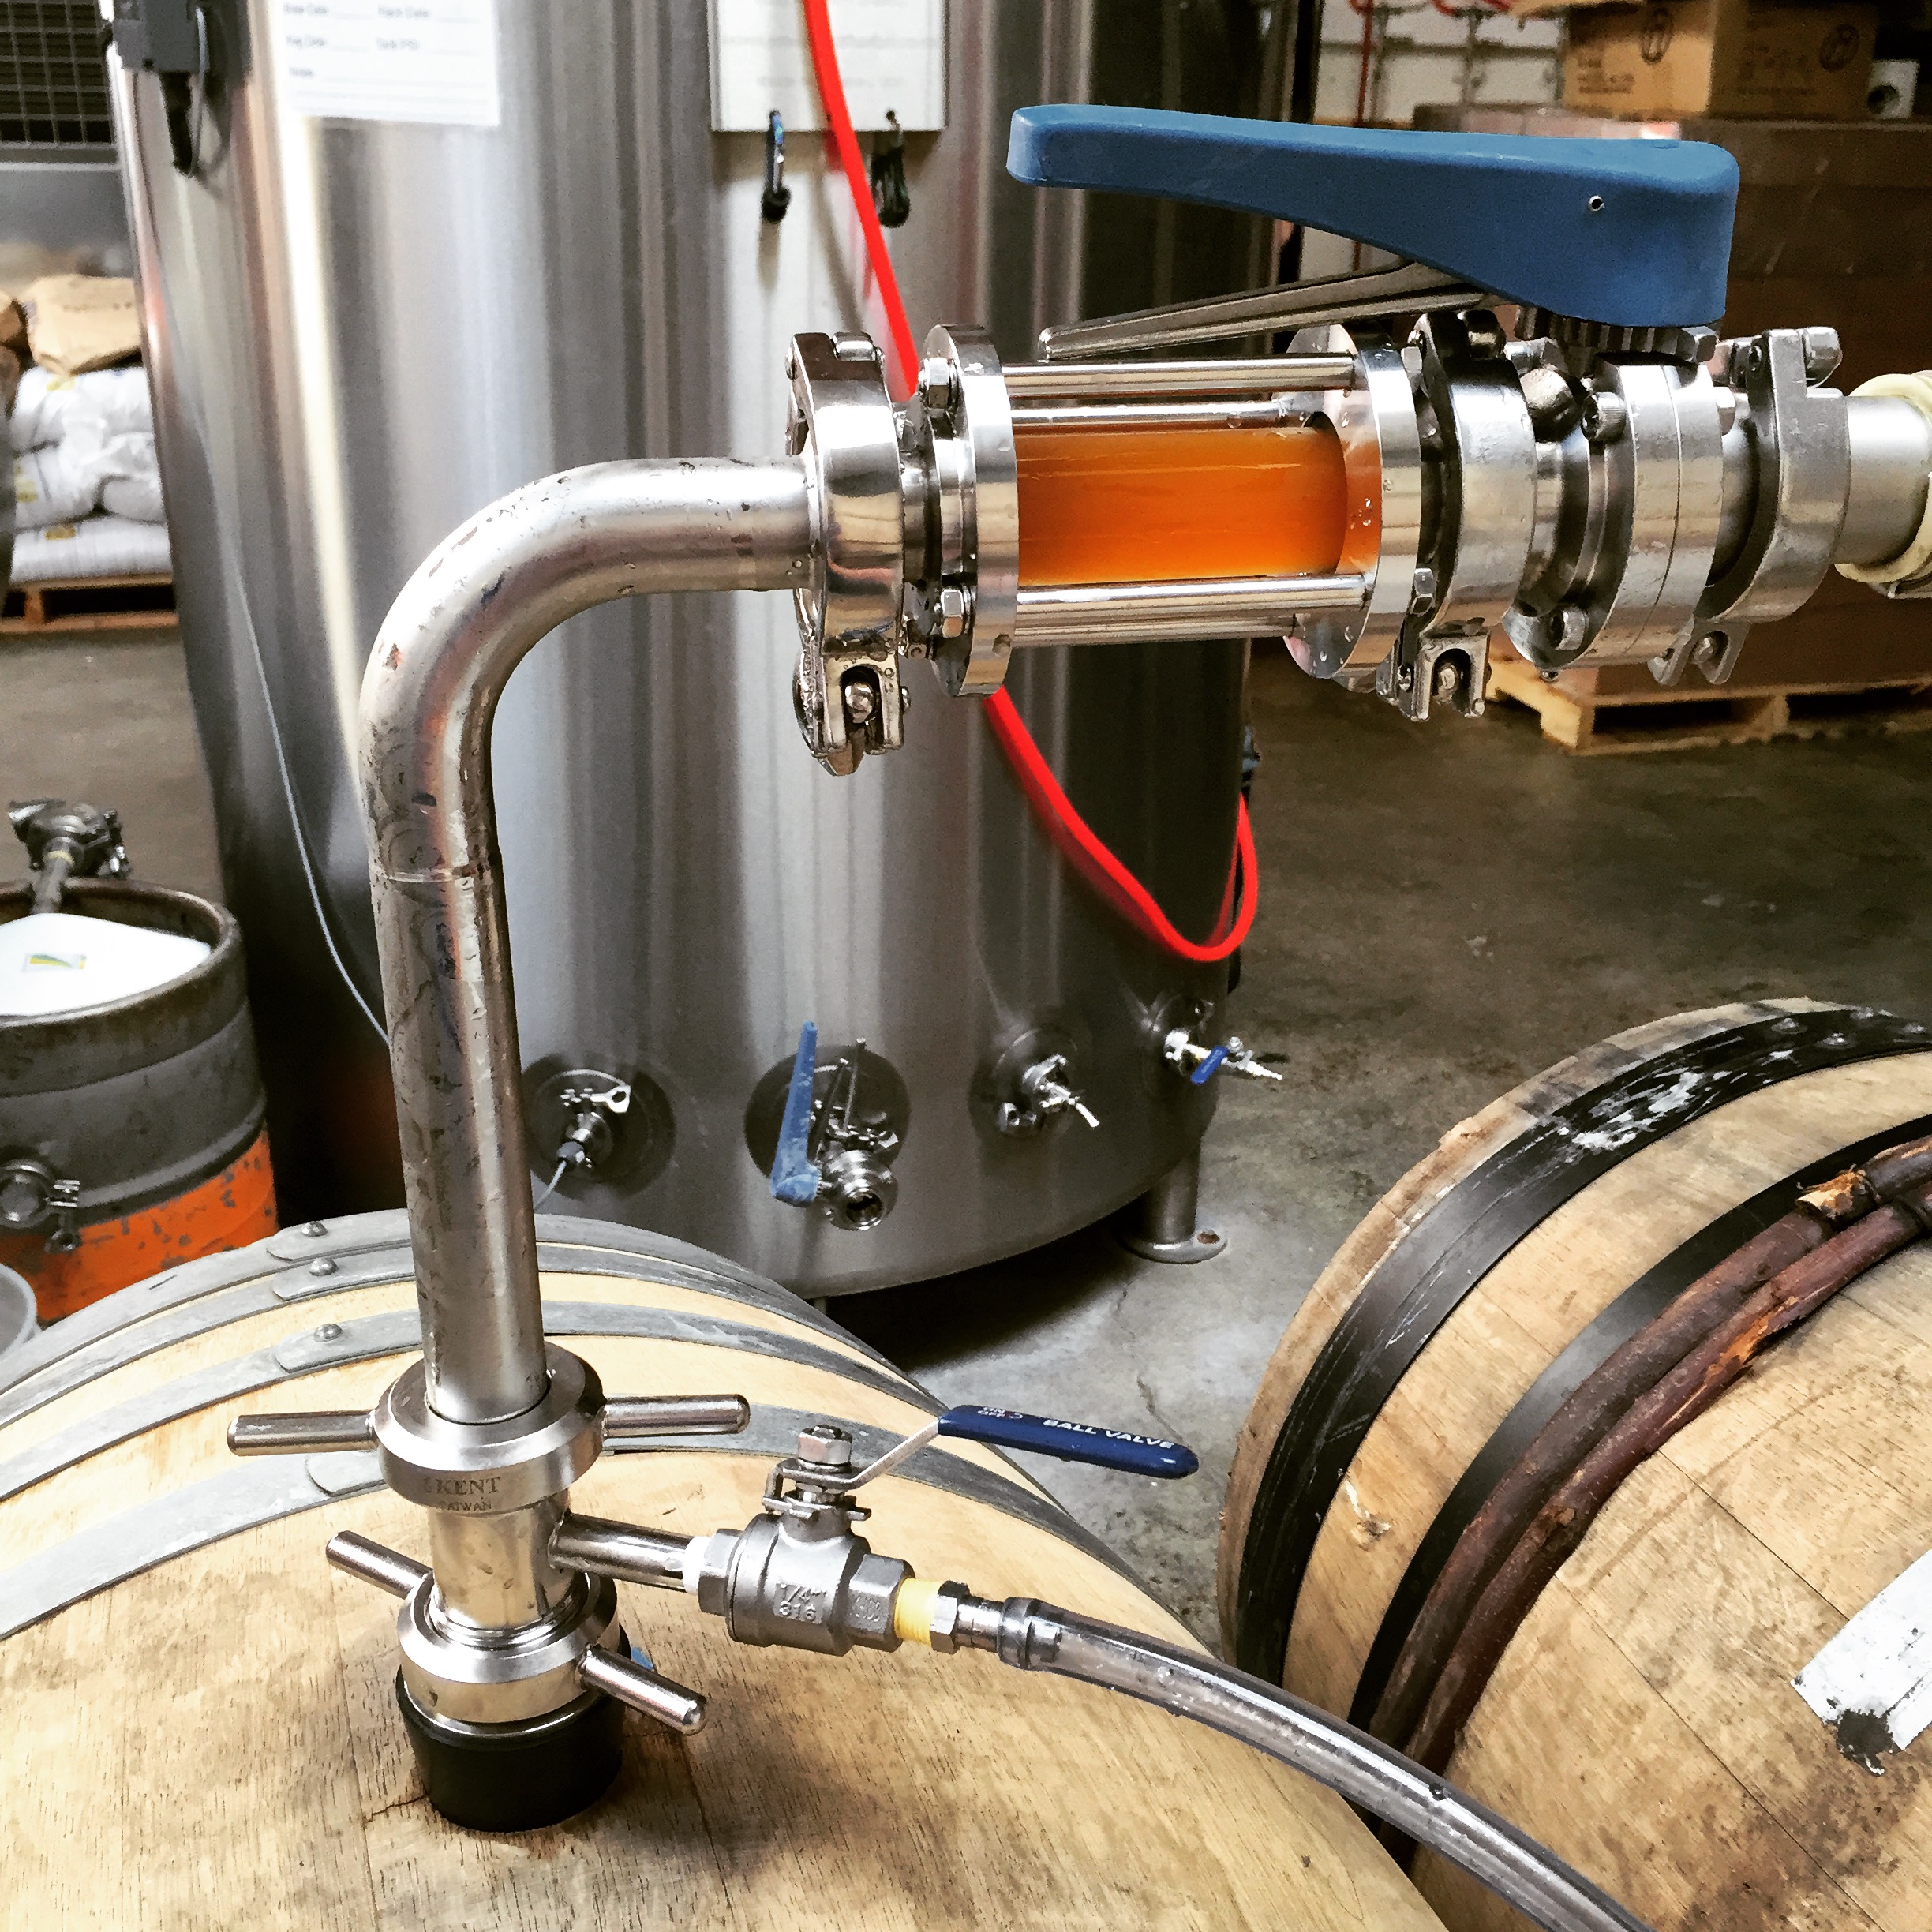 Racking beer in to barrels